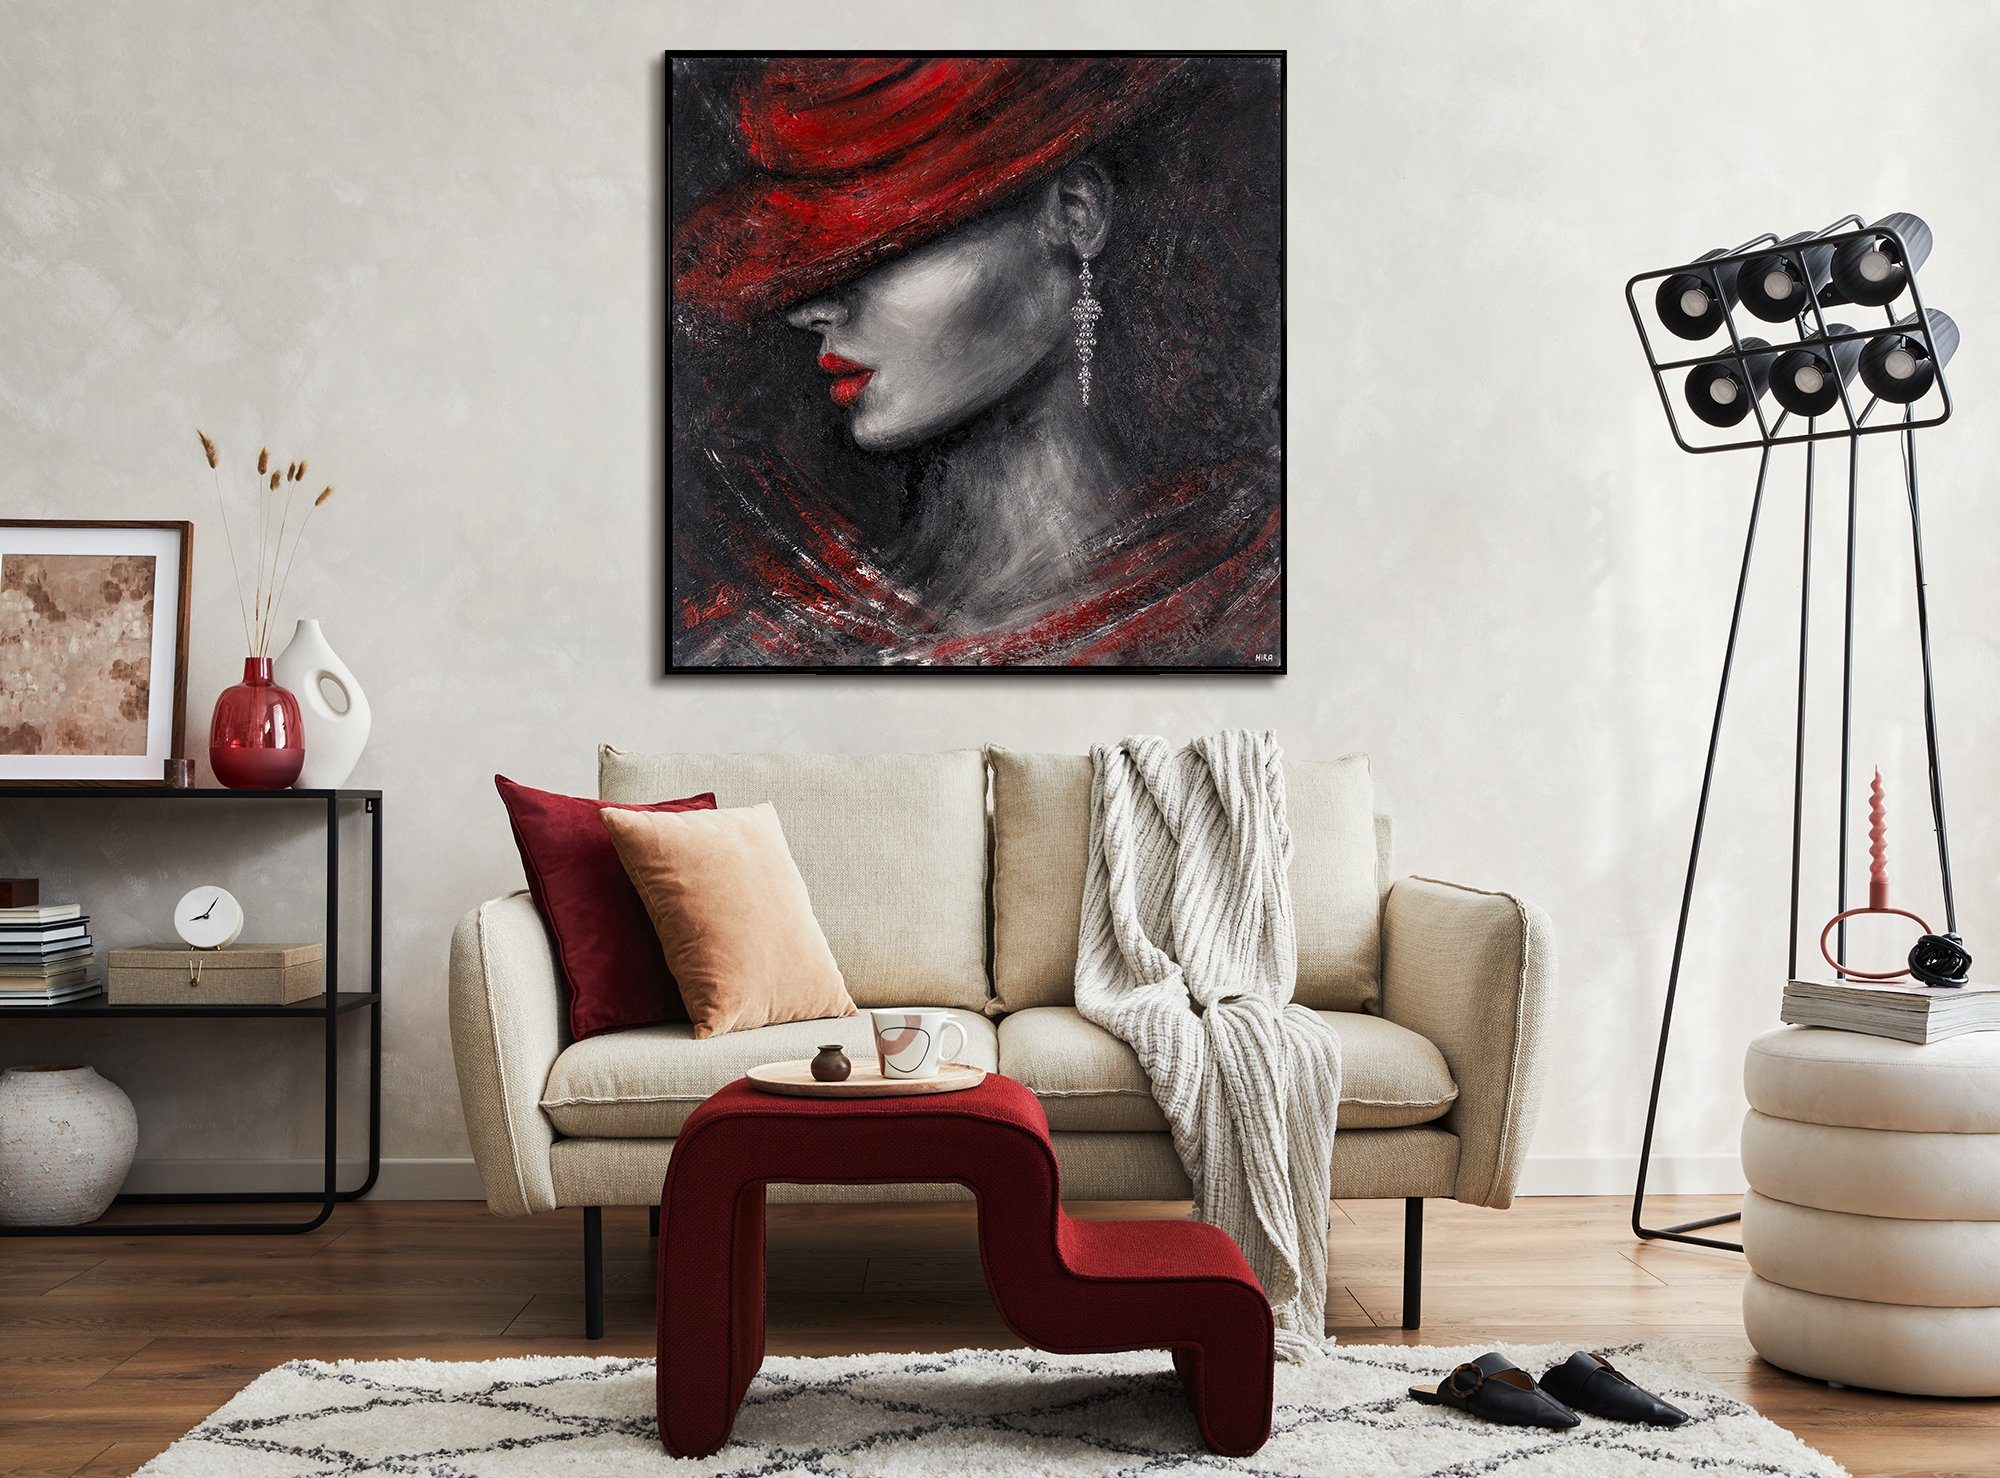 YS-Art Leinwand Hübsche Schwarz Handgemalt Gemälde Bild Menschen, Mit Lippen Stil, Rote Frau in Rahmen